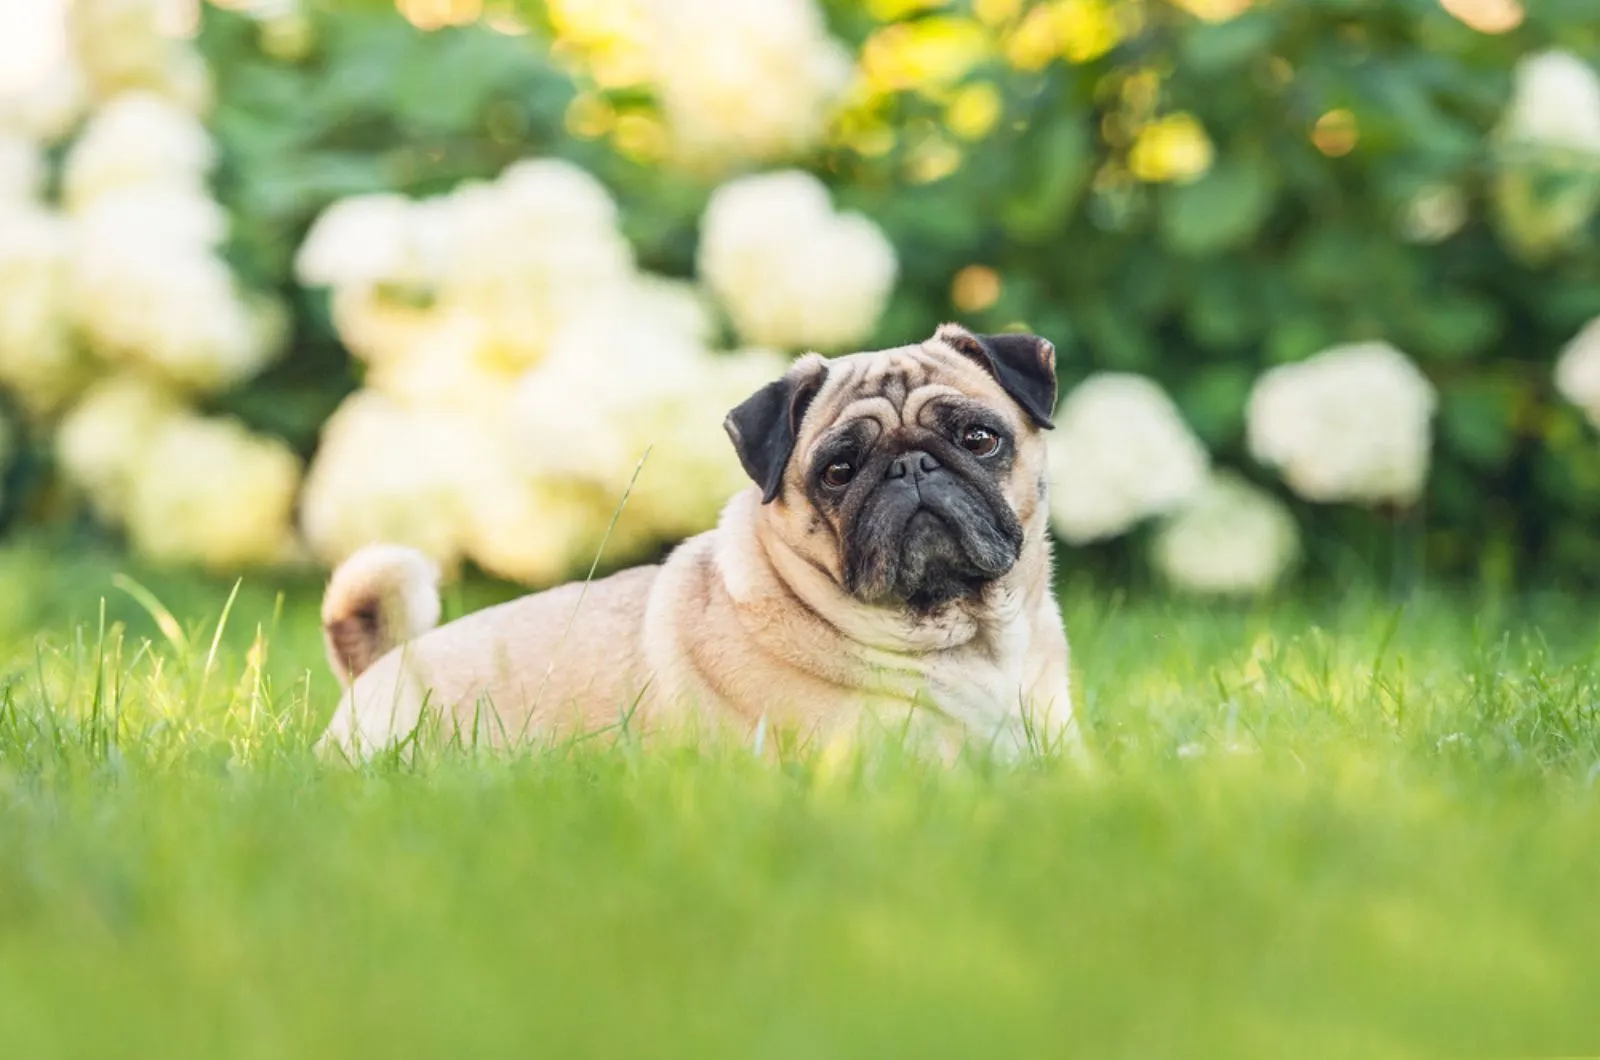 pug dog lying on the grass